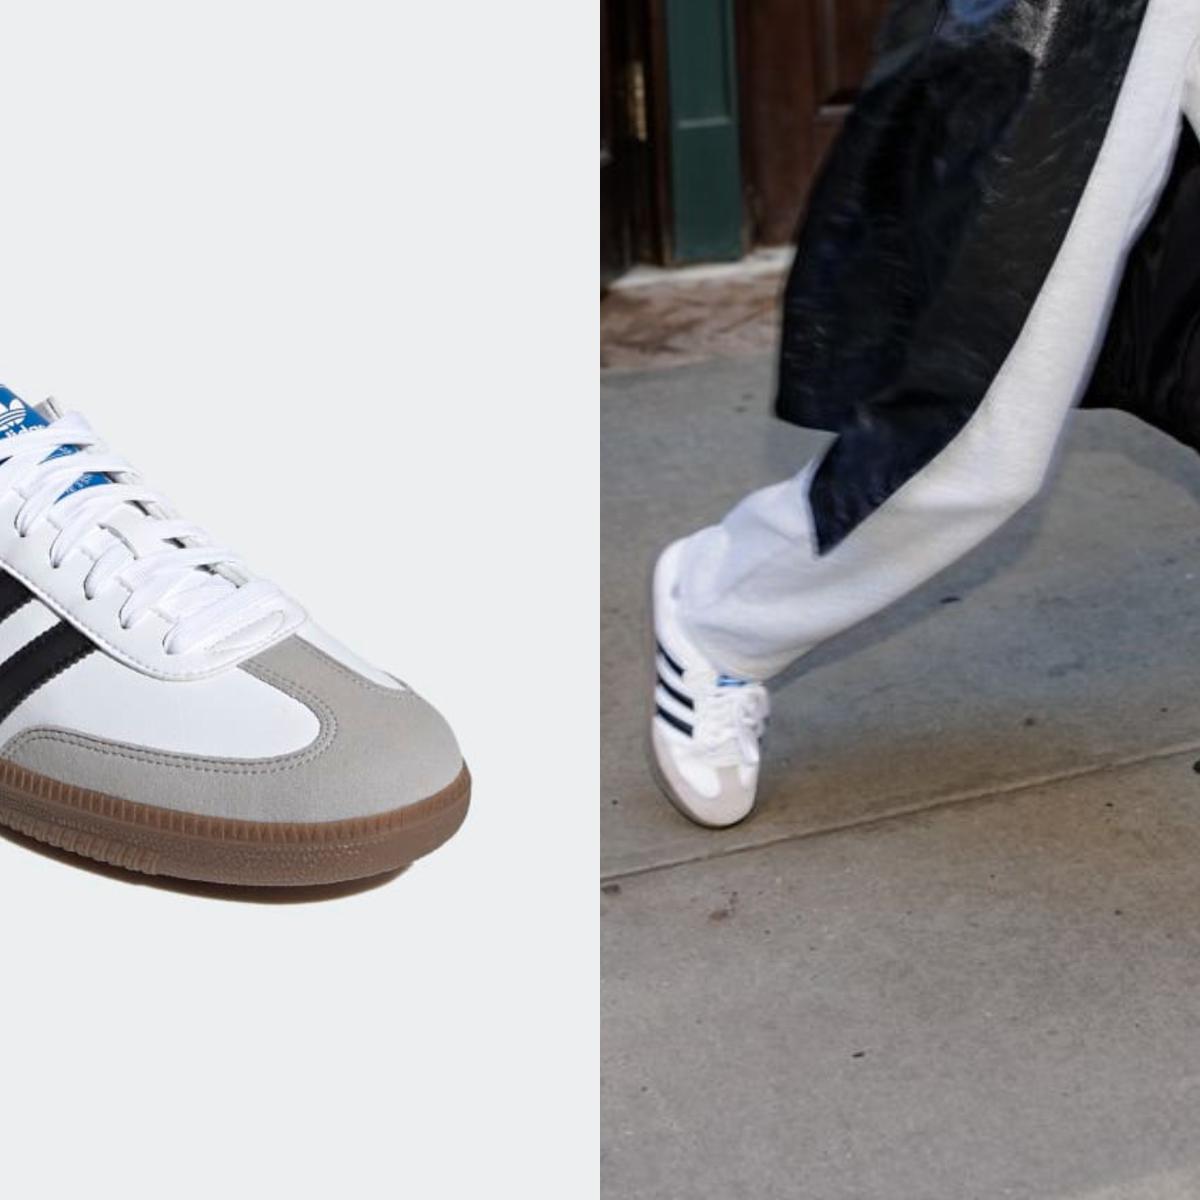 Zapatillas | Las adidas Samba, las zapatillas de los años 50 vuelven ser virales | Adidas | Adidas samba | Moda | tendencias | virales | VIU | EL